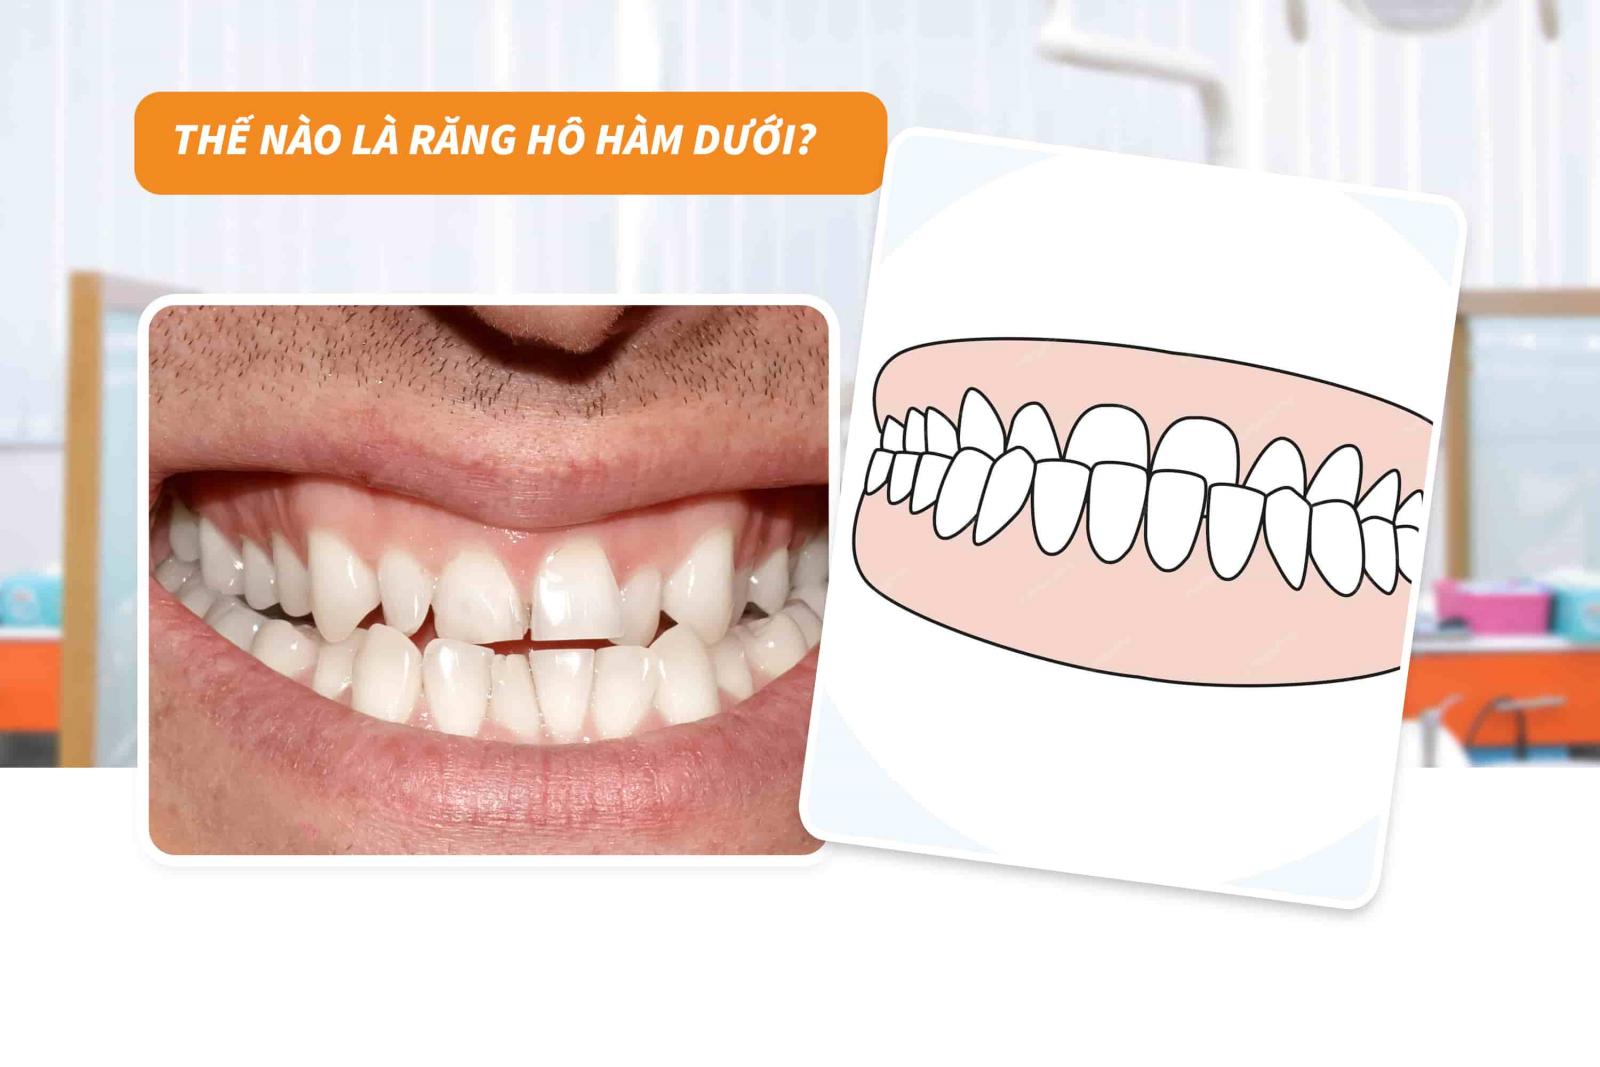 Thế nào là răng hô hàm dưới?